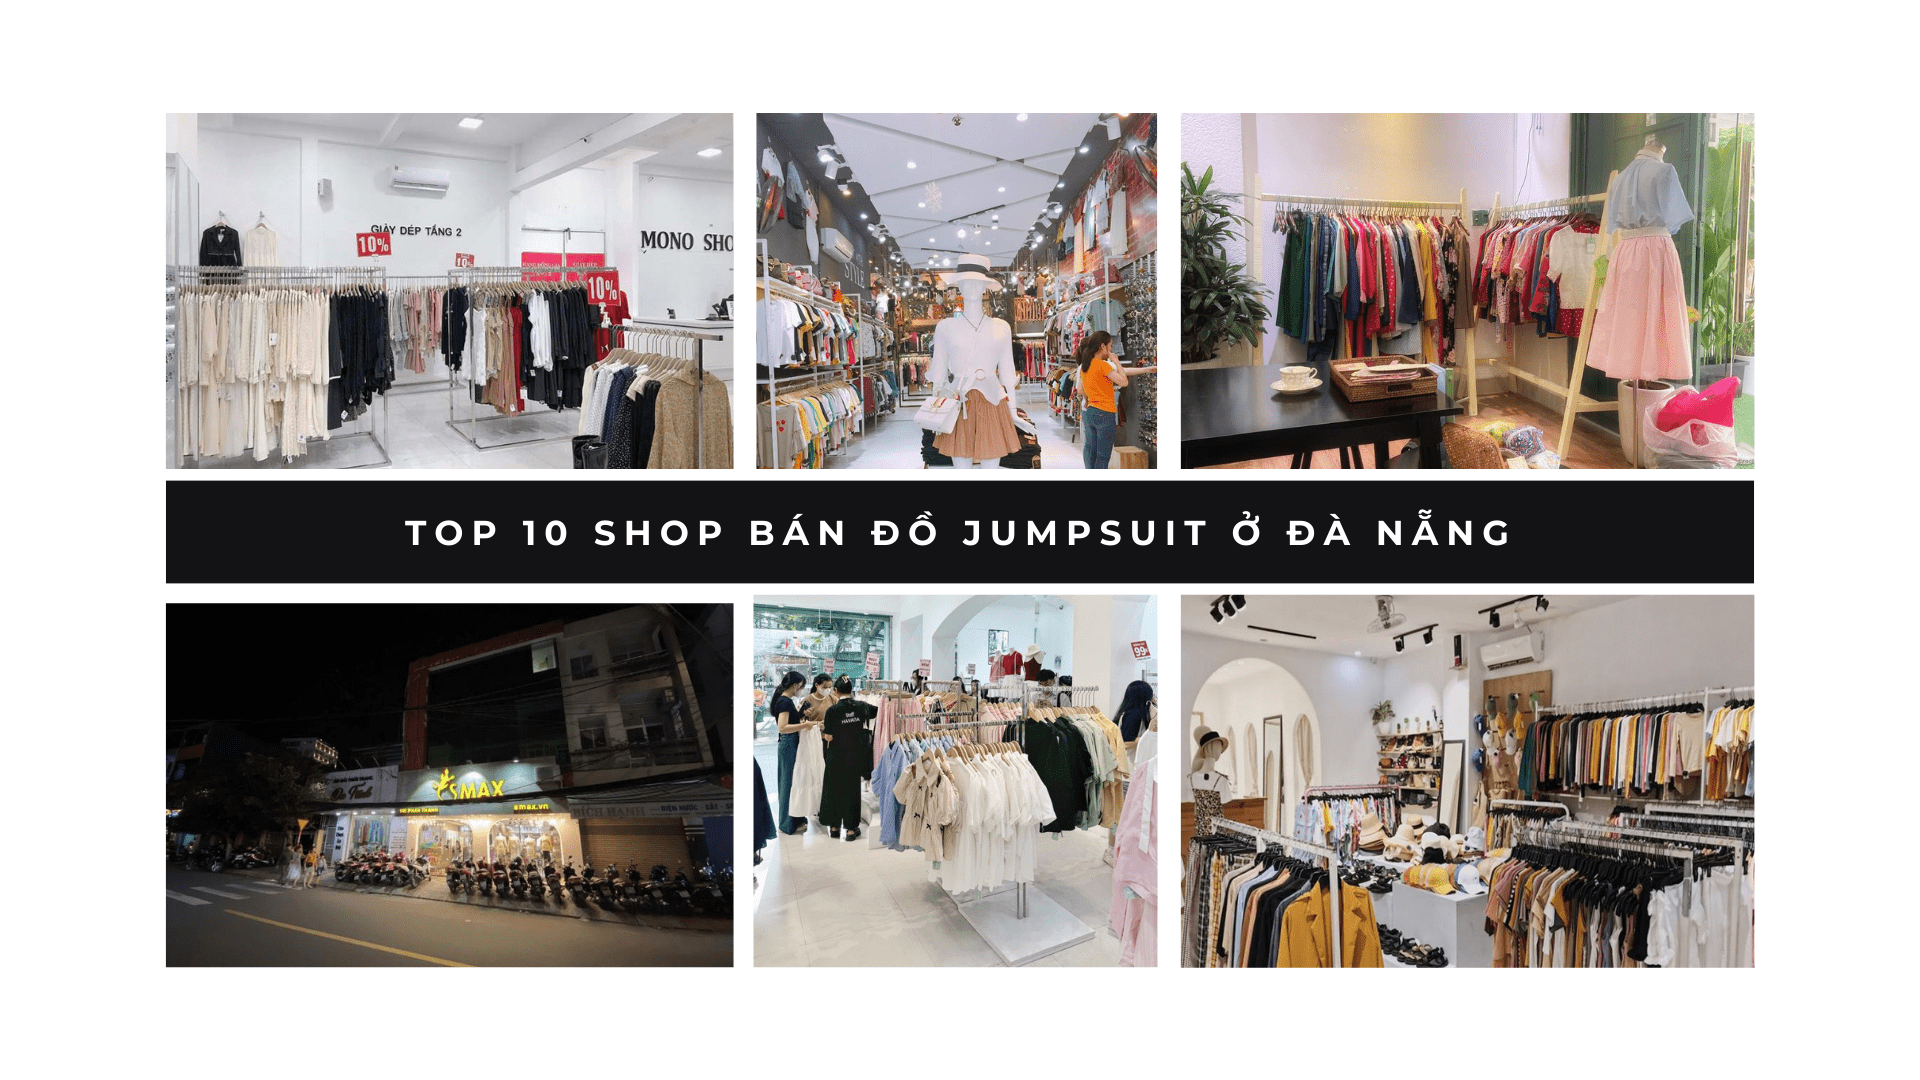 Top 10 shop bán đồ Jumpsuit ở Đà Nẵng